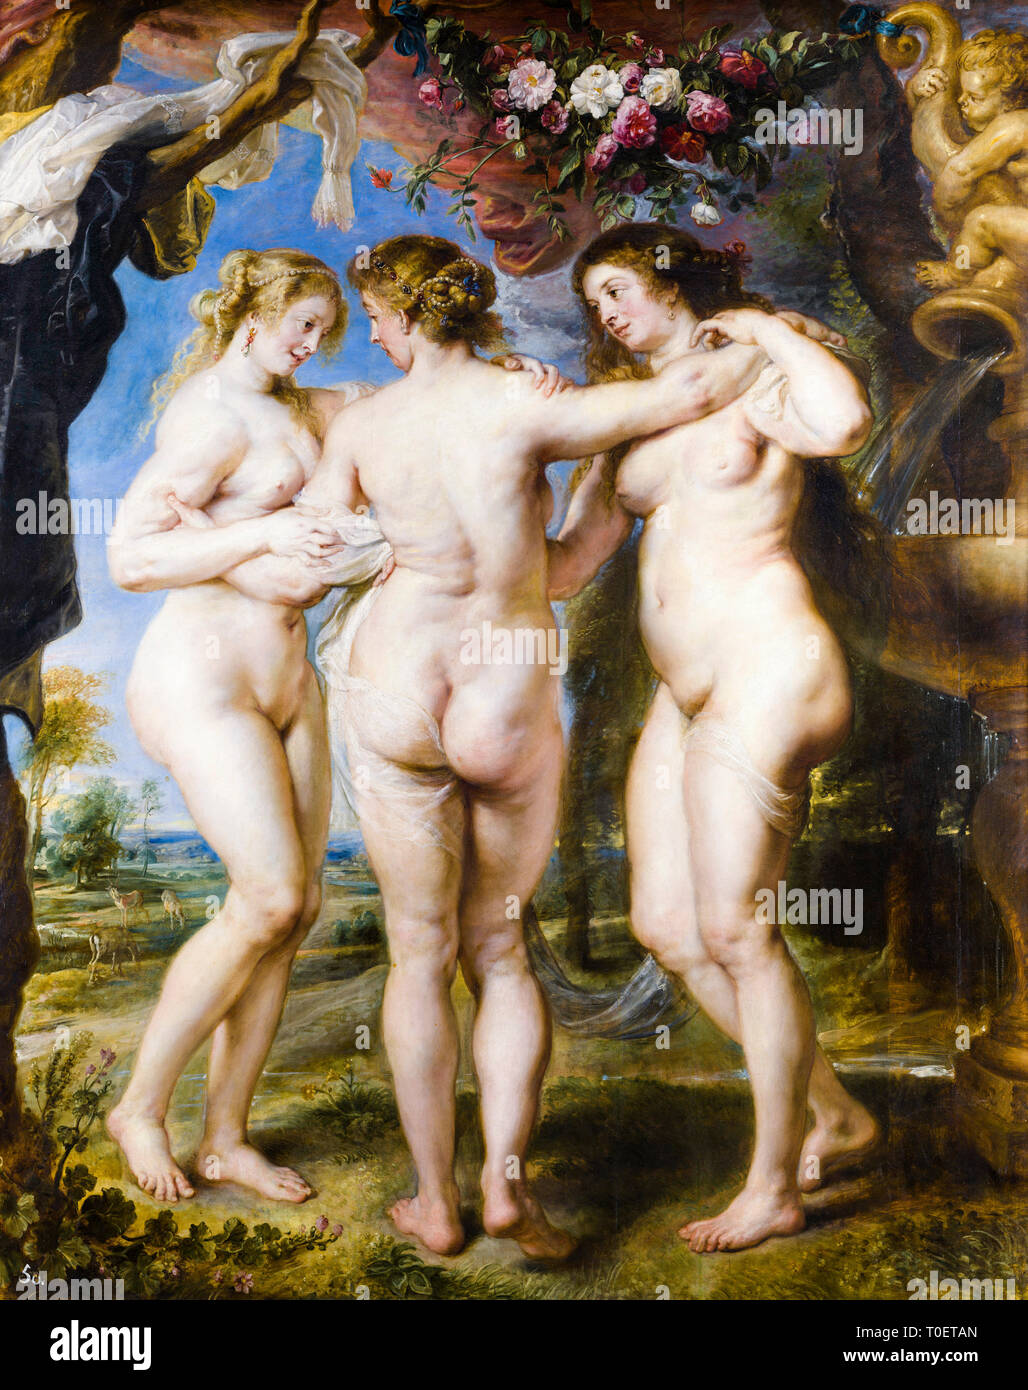 Les trois Grâces, Rubens. Peinture baroque de Pierre Paul Rubens, 1635 Banque D'Images